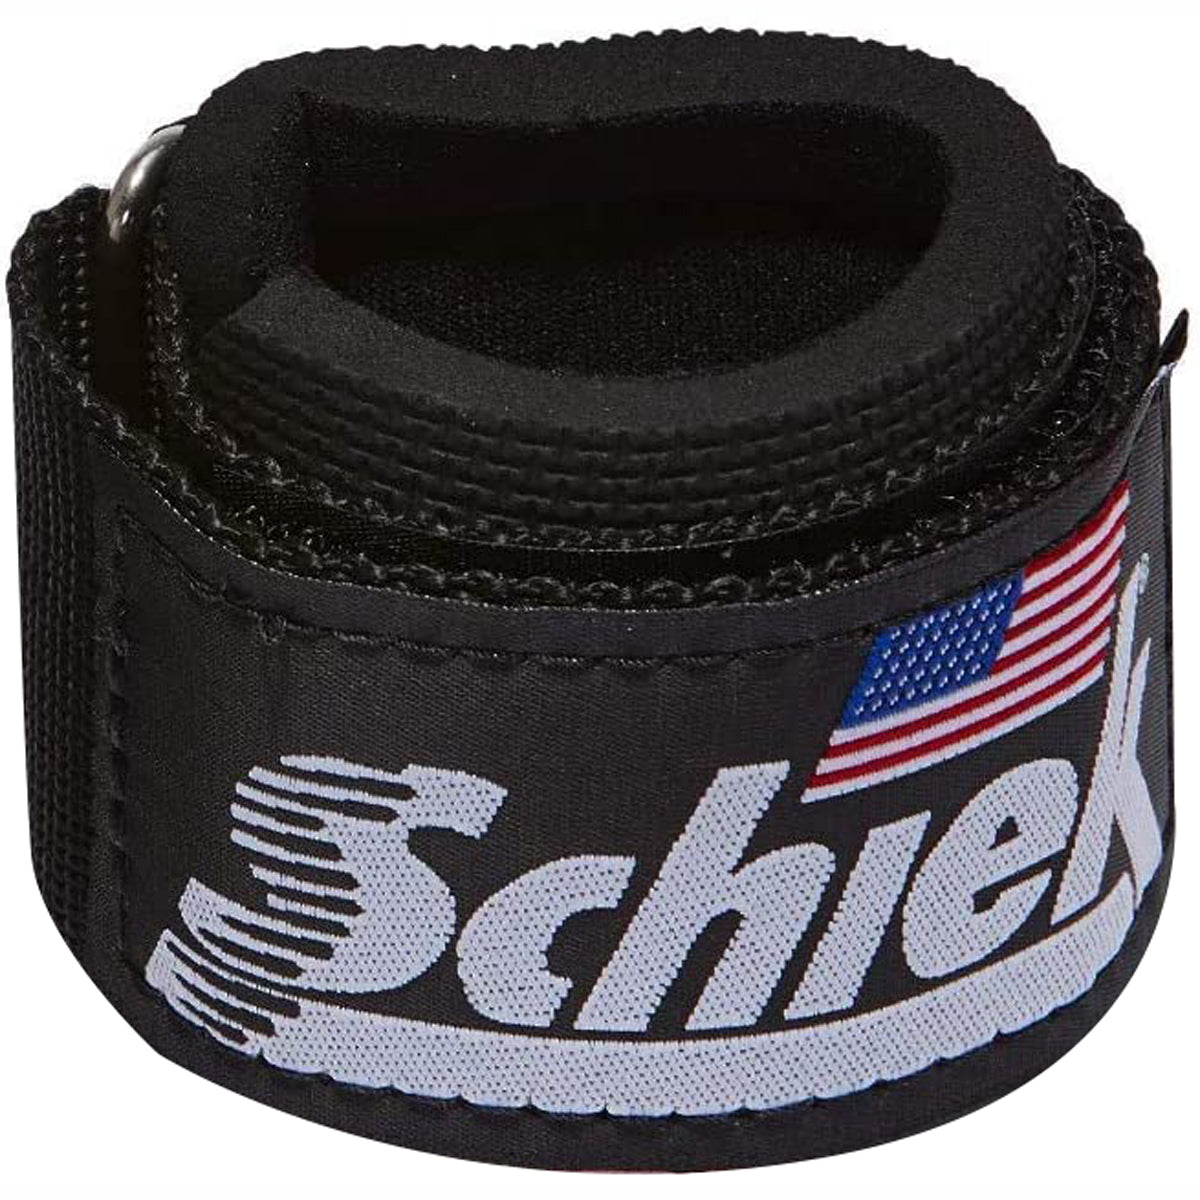 Schiek Sports Model 1100-WS Extra-Wide Wrist Straps - Black Schiek Sports